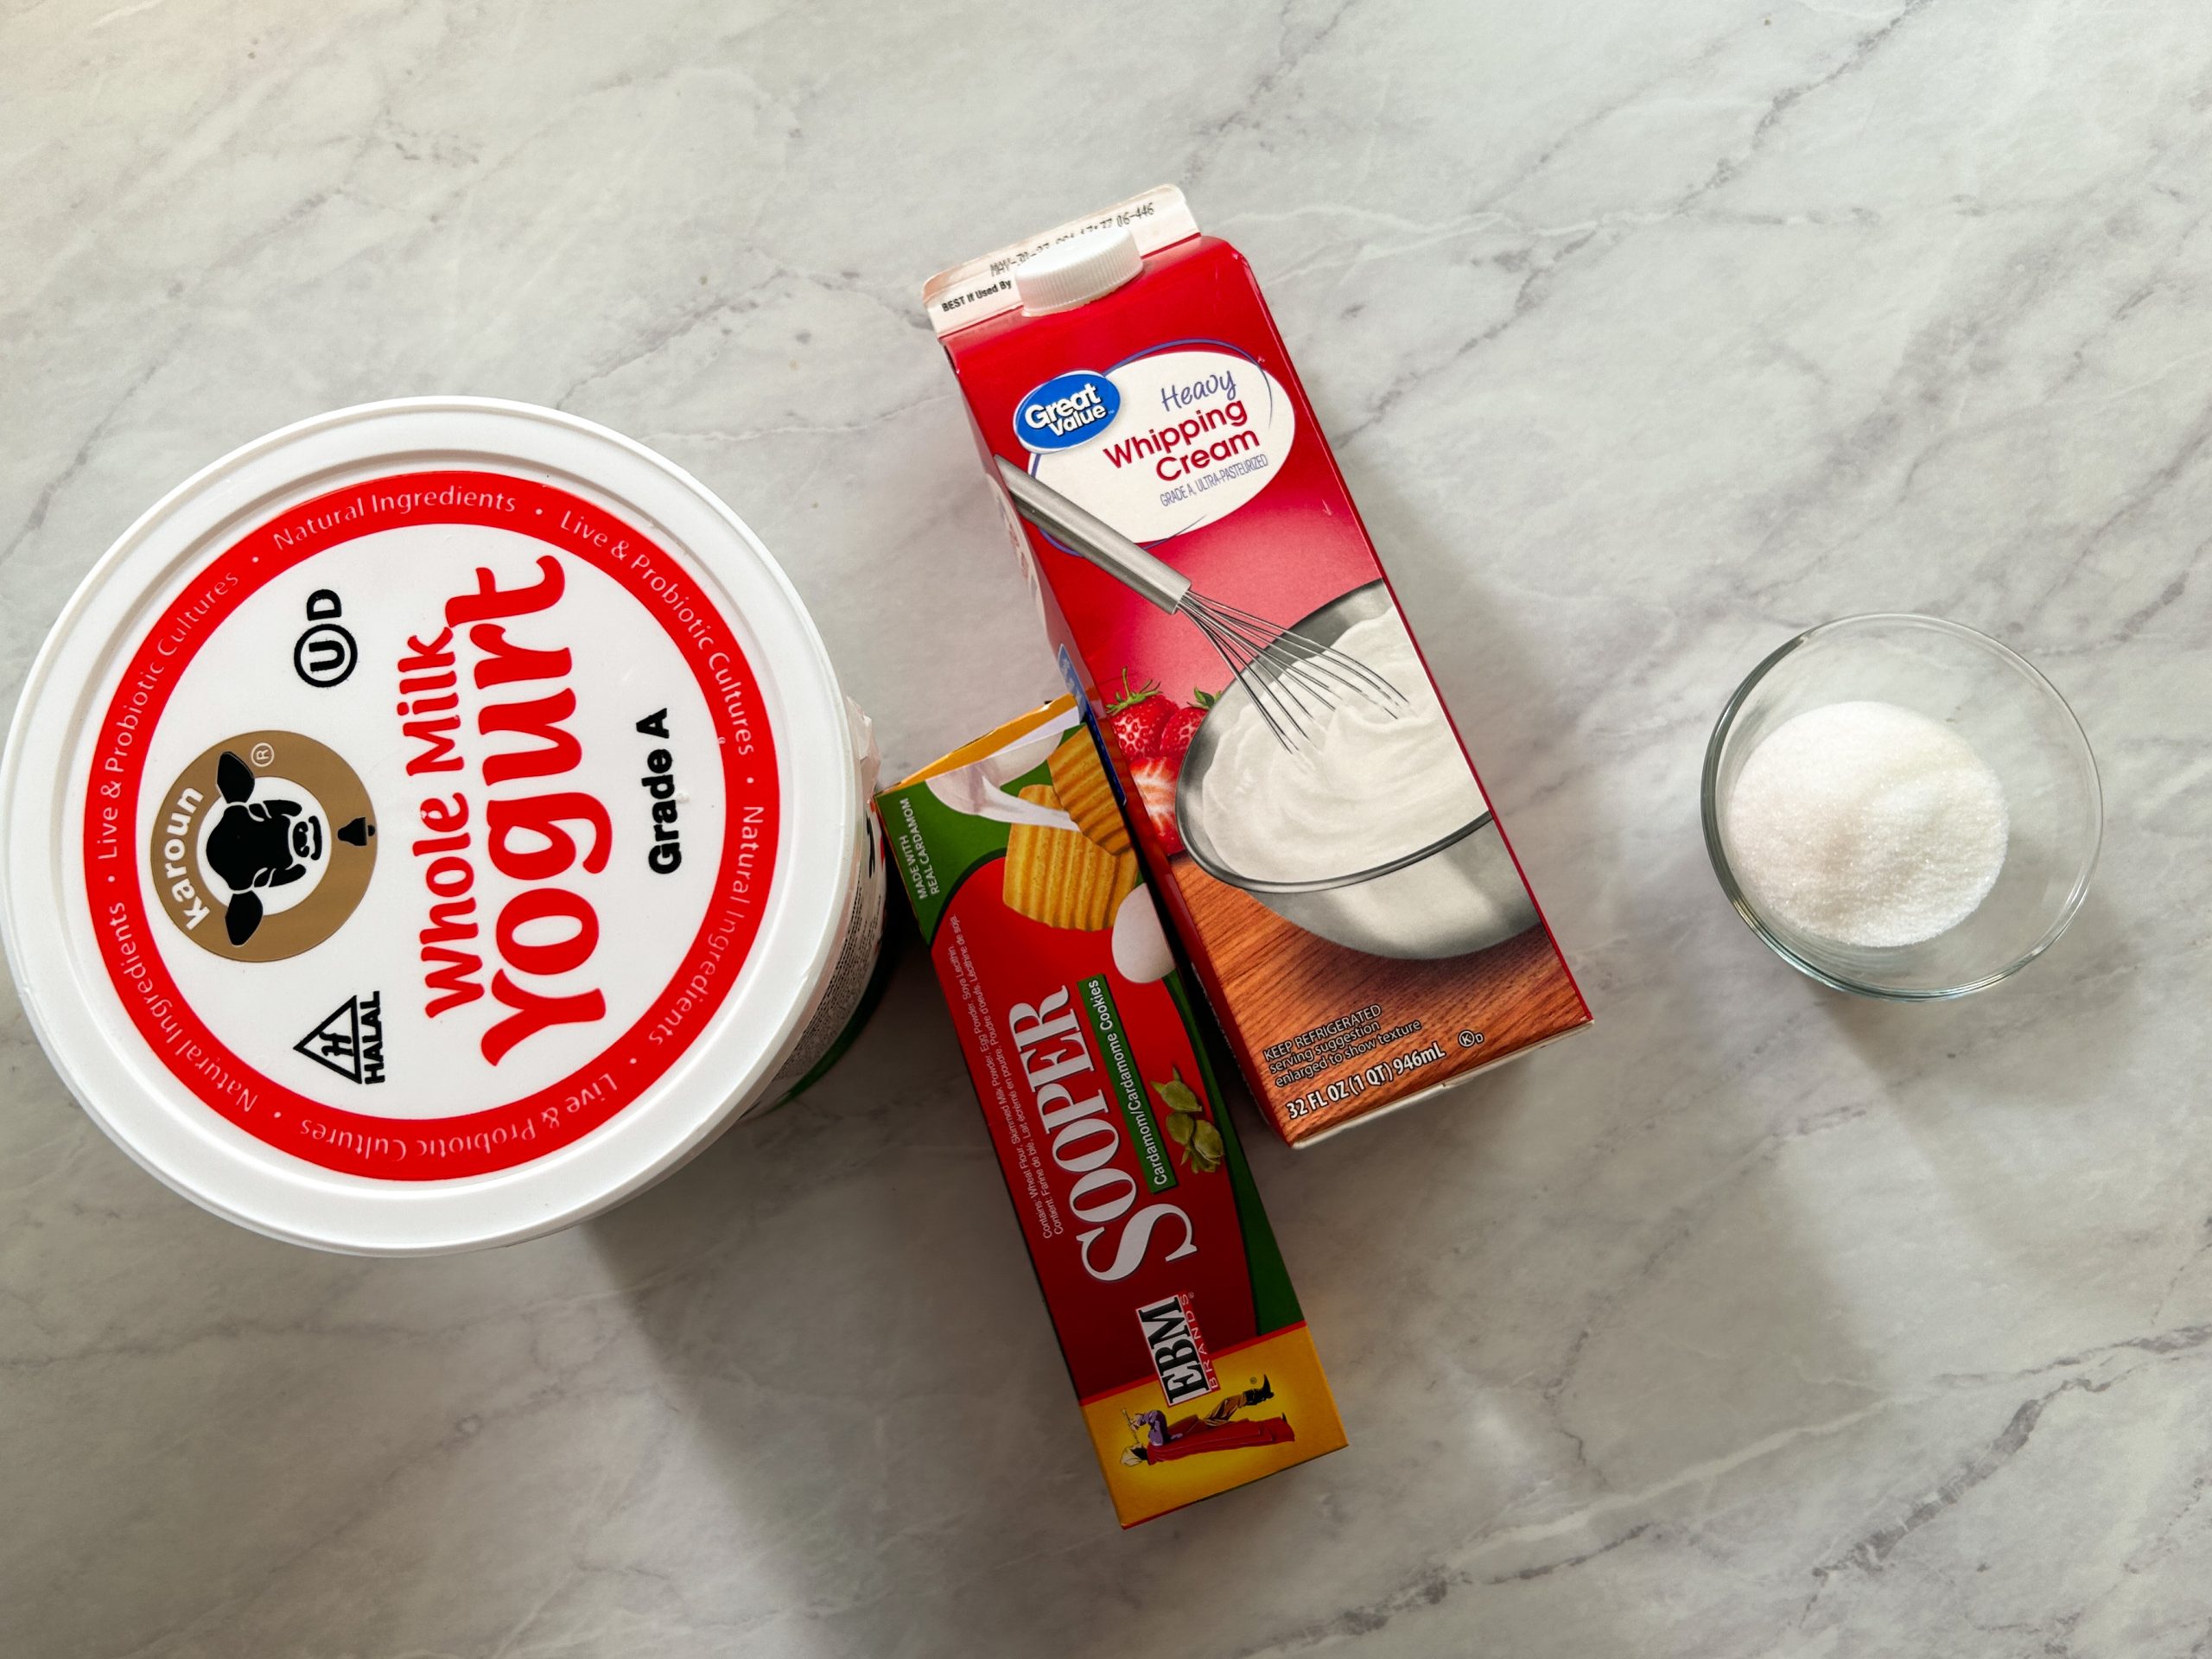 yogurt parfait ingredients: yogurt, cream, biscuits and sugar